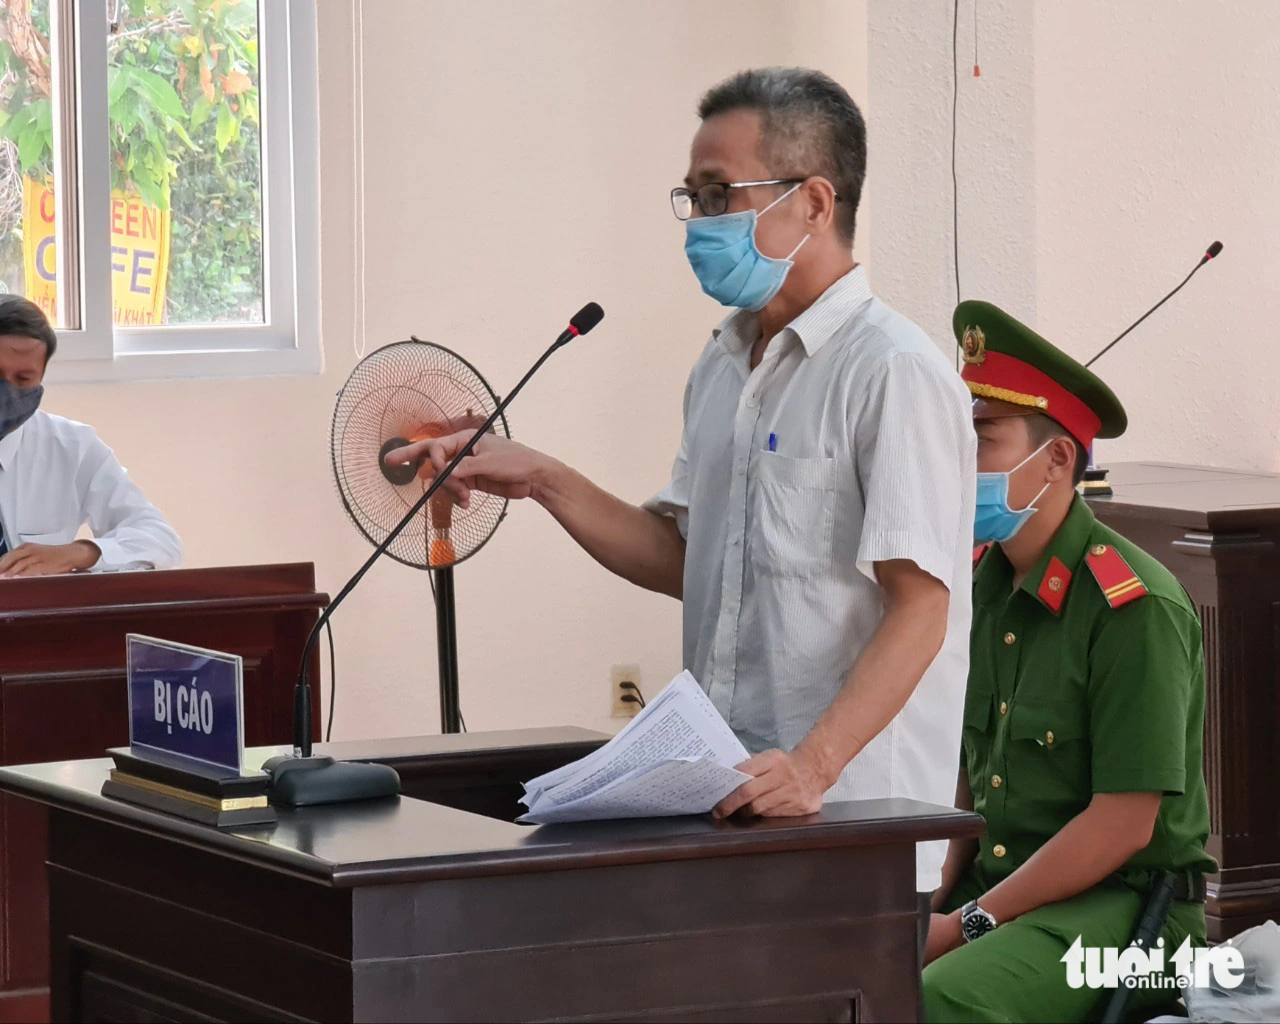 Ông Nguyễn Hồng Khanh trình bày cho rằng mình bị oan tại phiên tòa sơ thẩm tại TAND tỉnh Bình Dương - Ảnh: B.S.